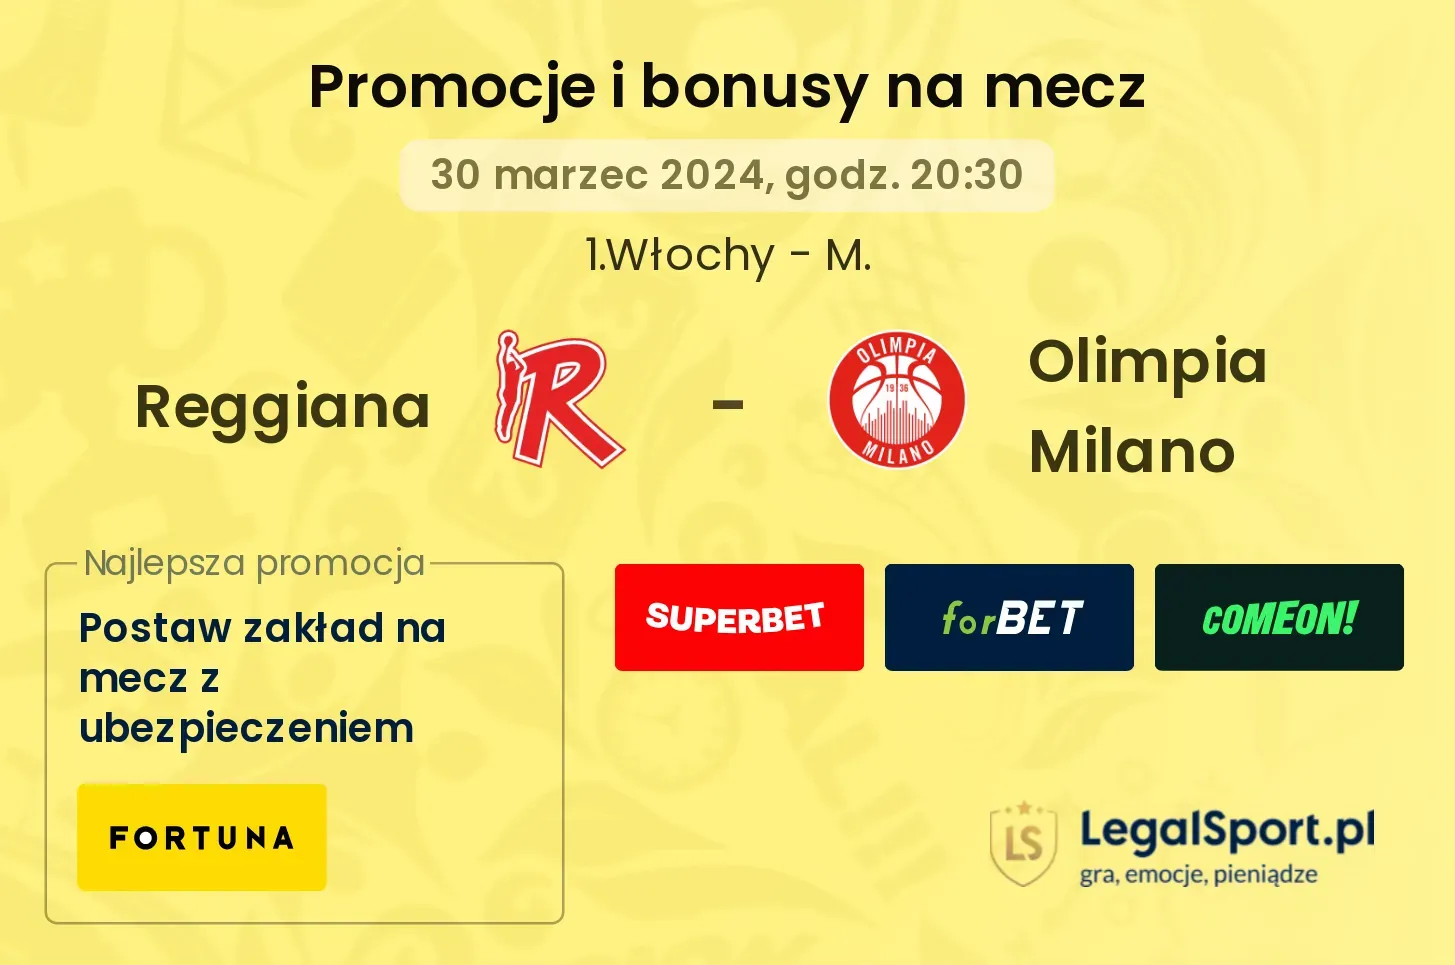 Reggiana - Olimpia Milano promocje bonusy na mecz